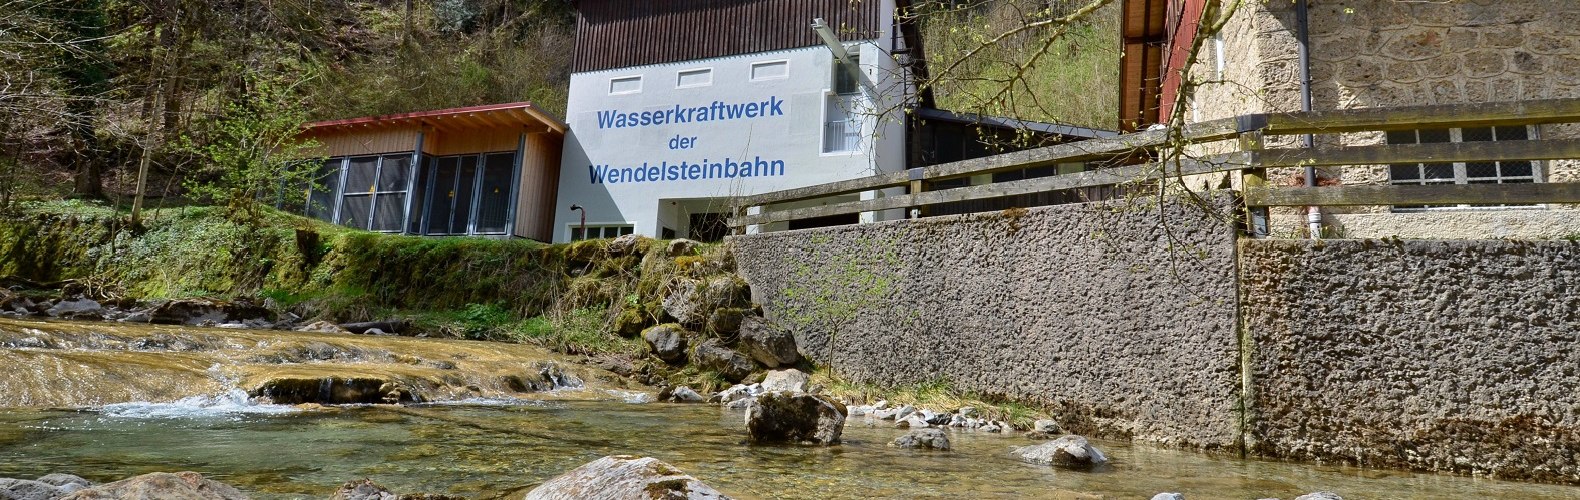 Wasserkraftwerk der Wendelsteinbahn an der Sudelfeldstr. 120 in Brannenburg, © Peter Hofmann